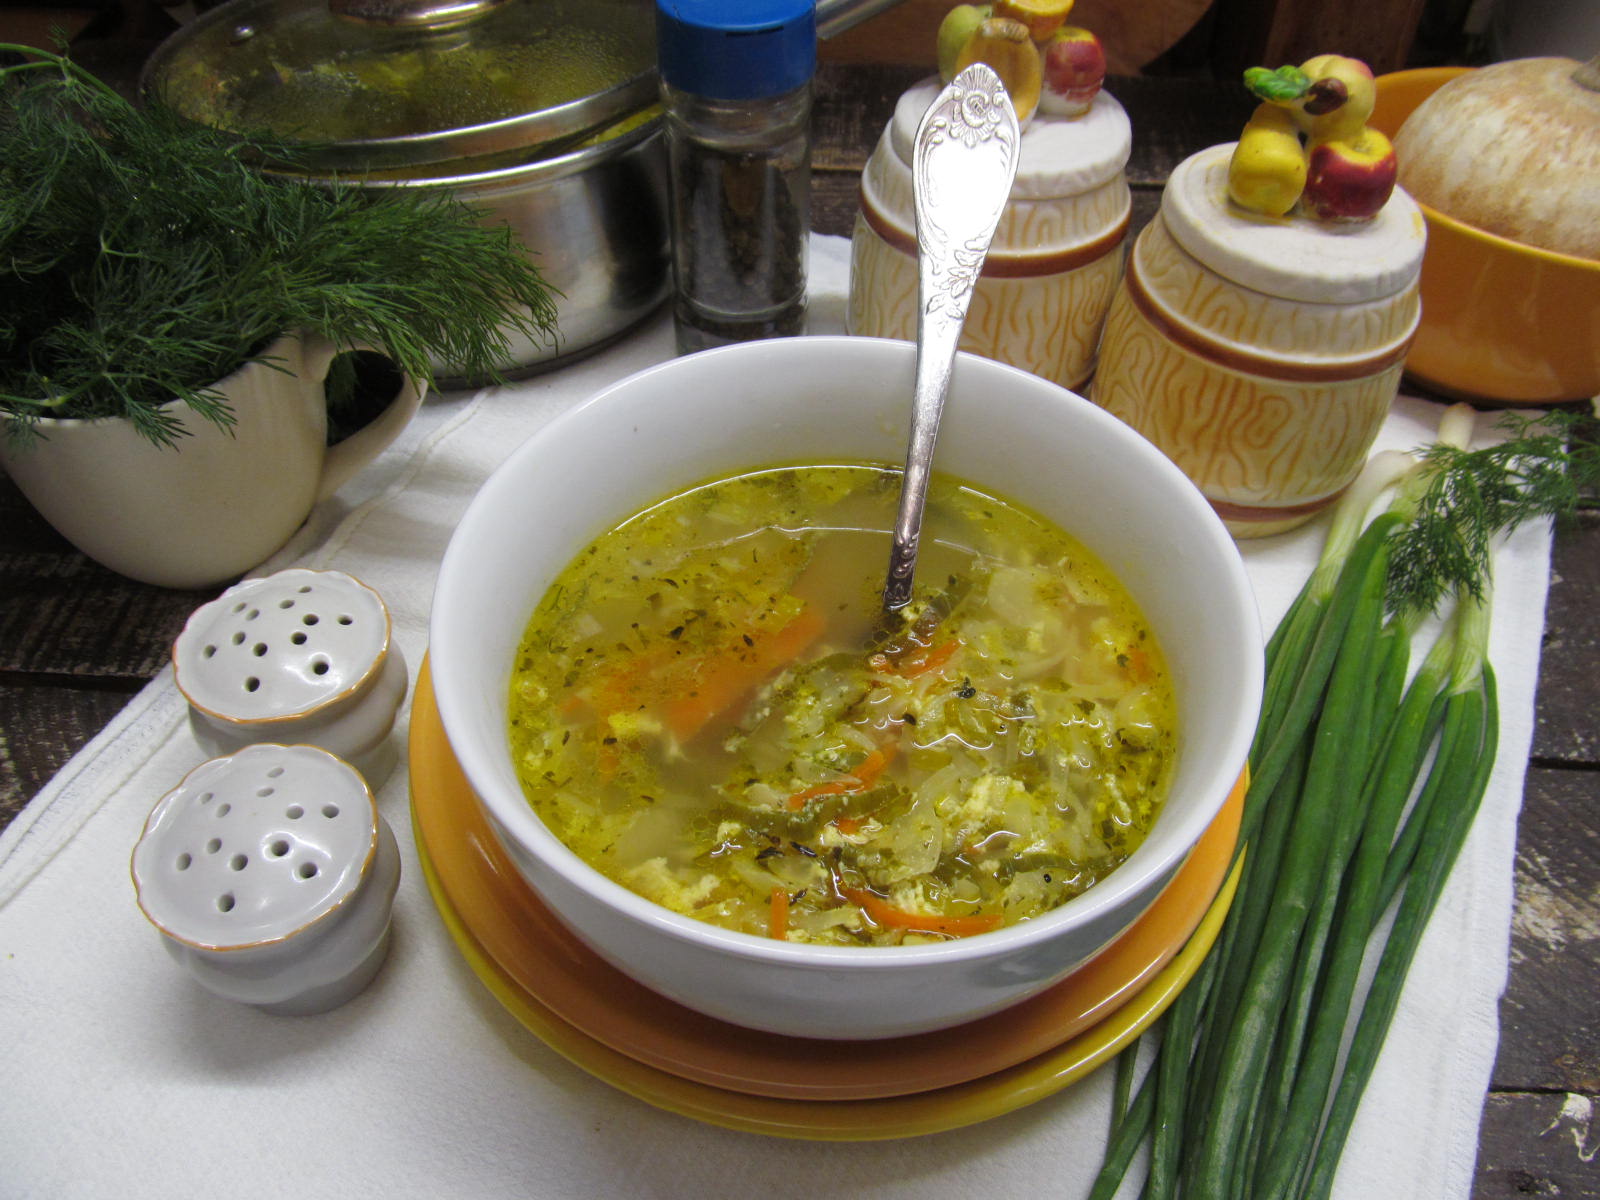 Ингредиенты для супа с молодой капустой